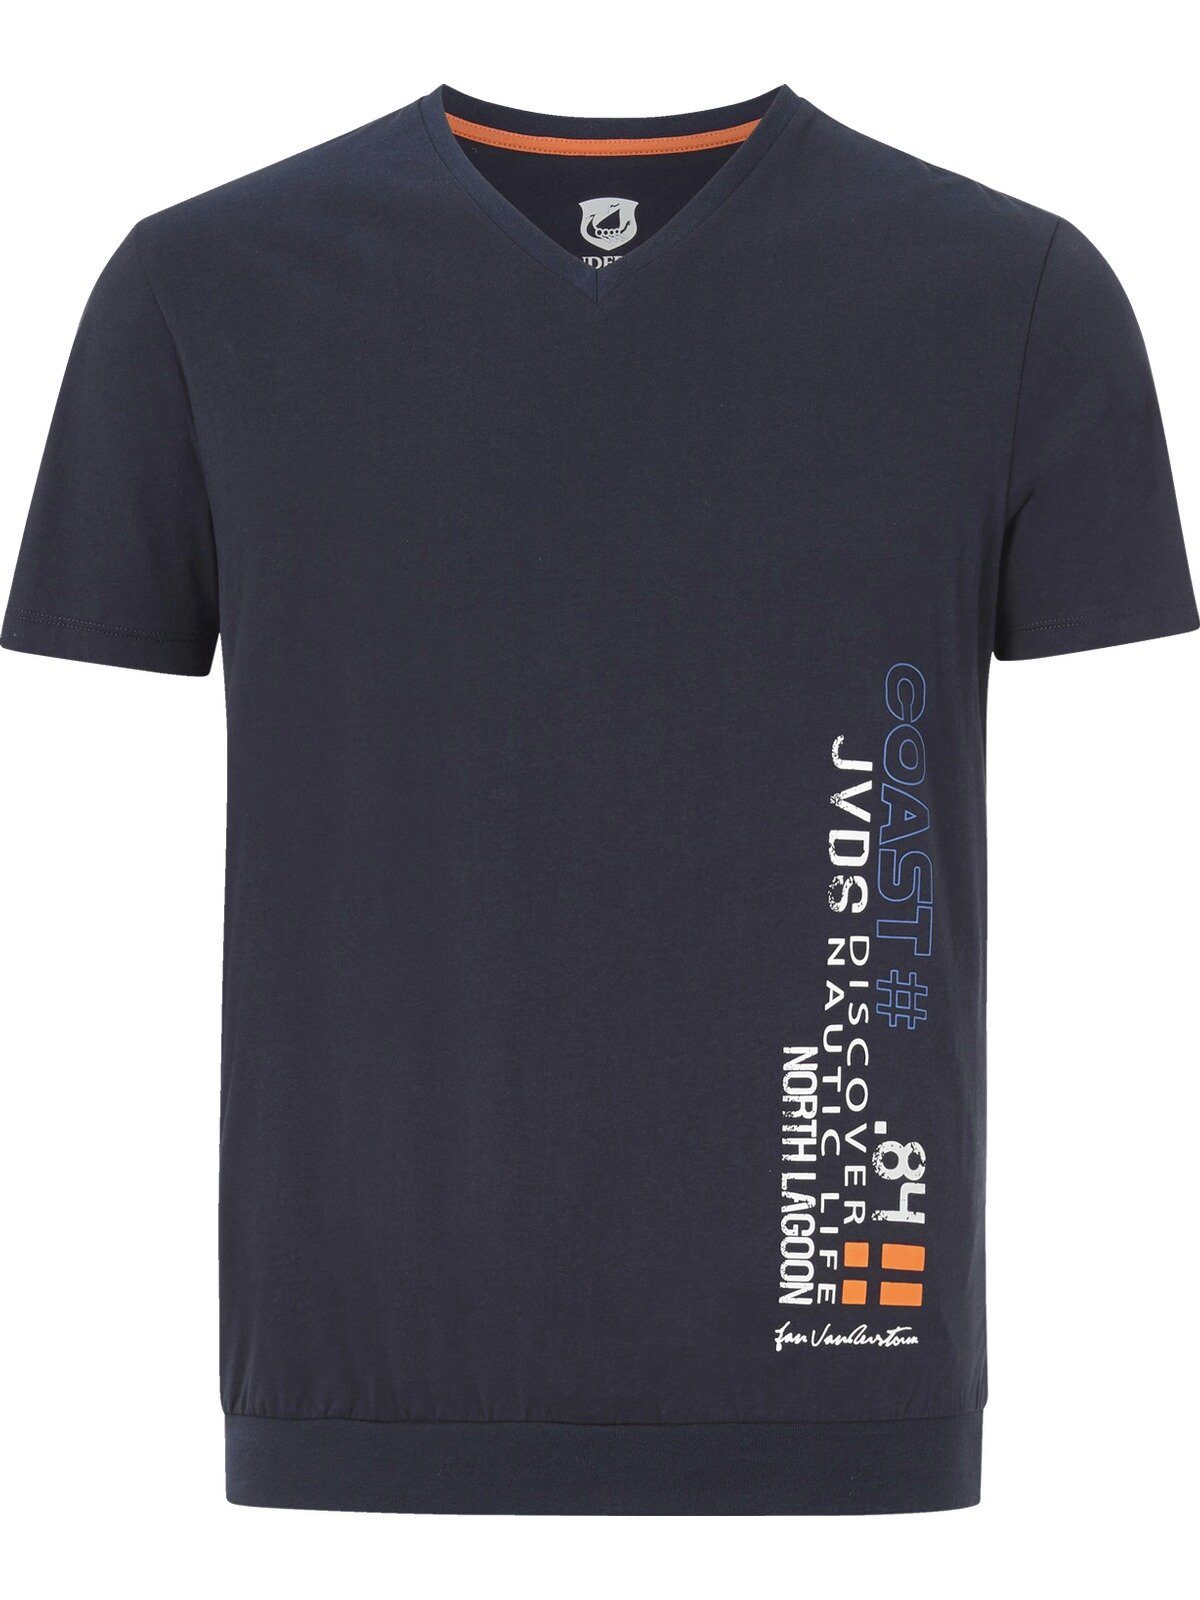 T-Shirt Jan GILBRECHT Comfort Fit Kollektion, Vanderstorm dunkelblau +Fit